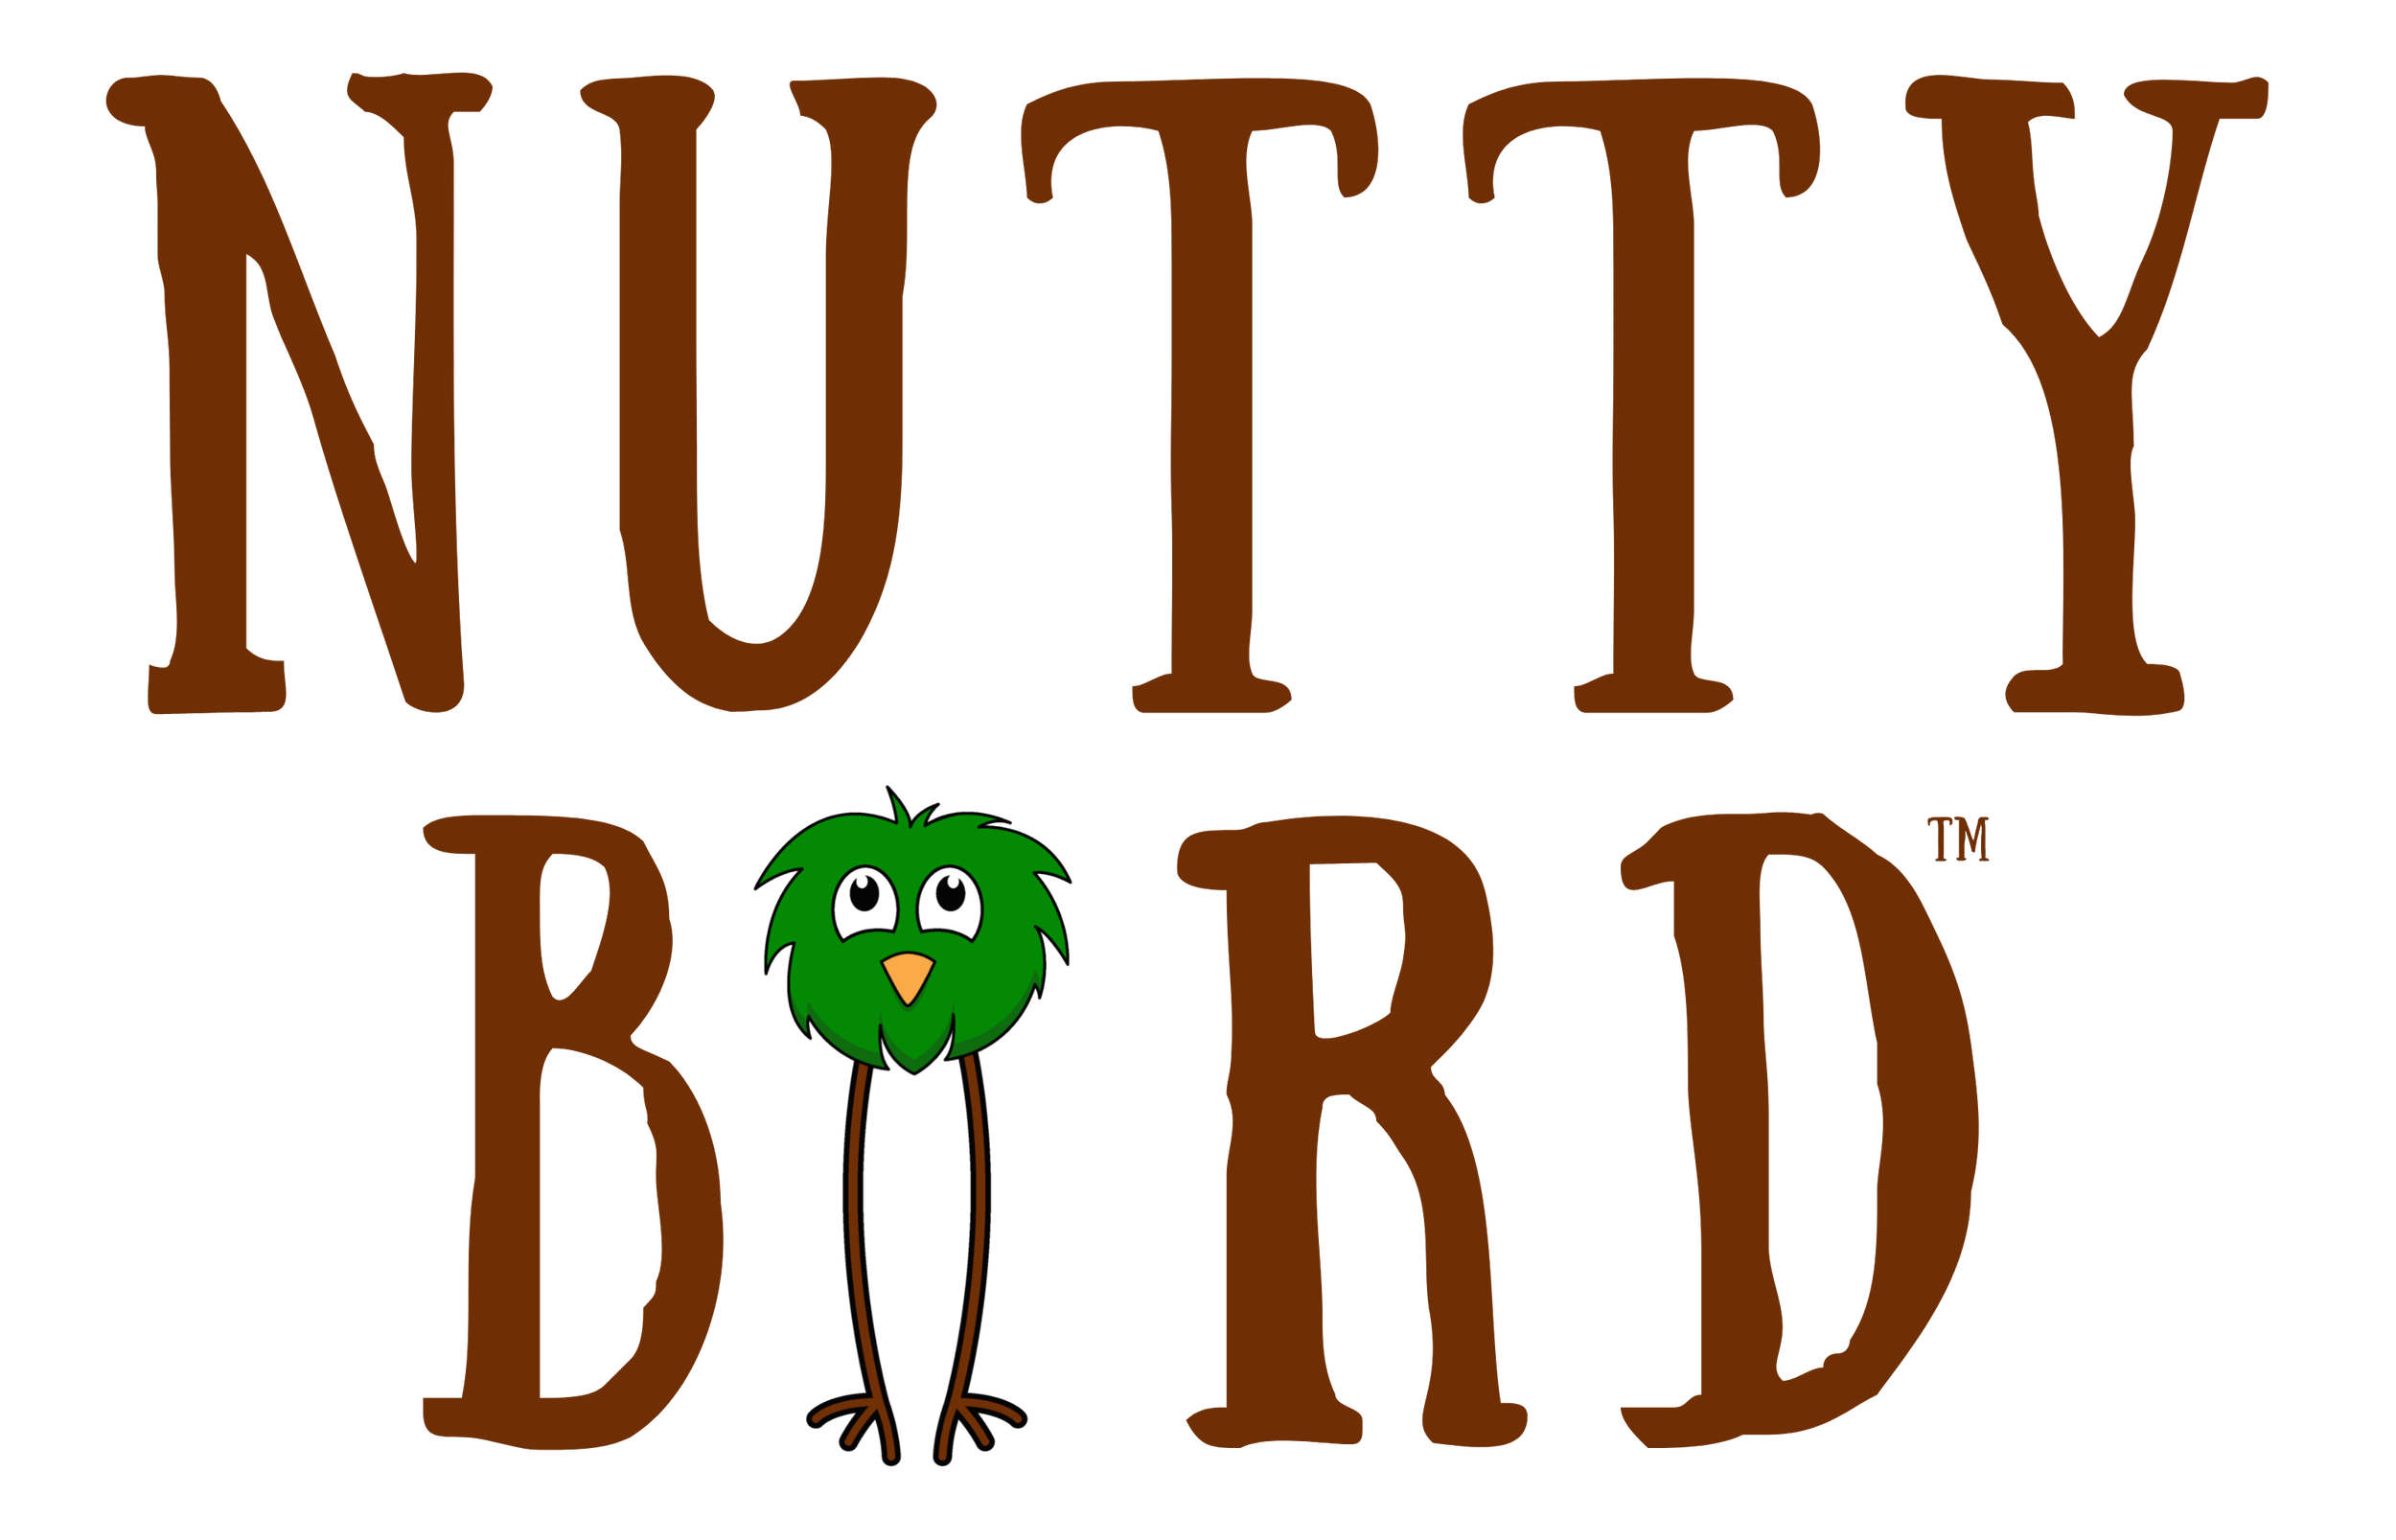 Nutty Bird Granola